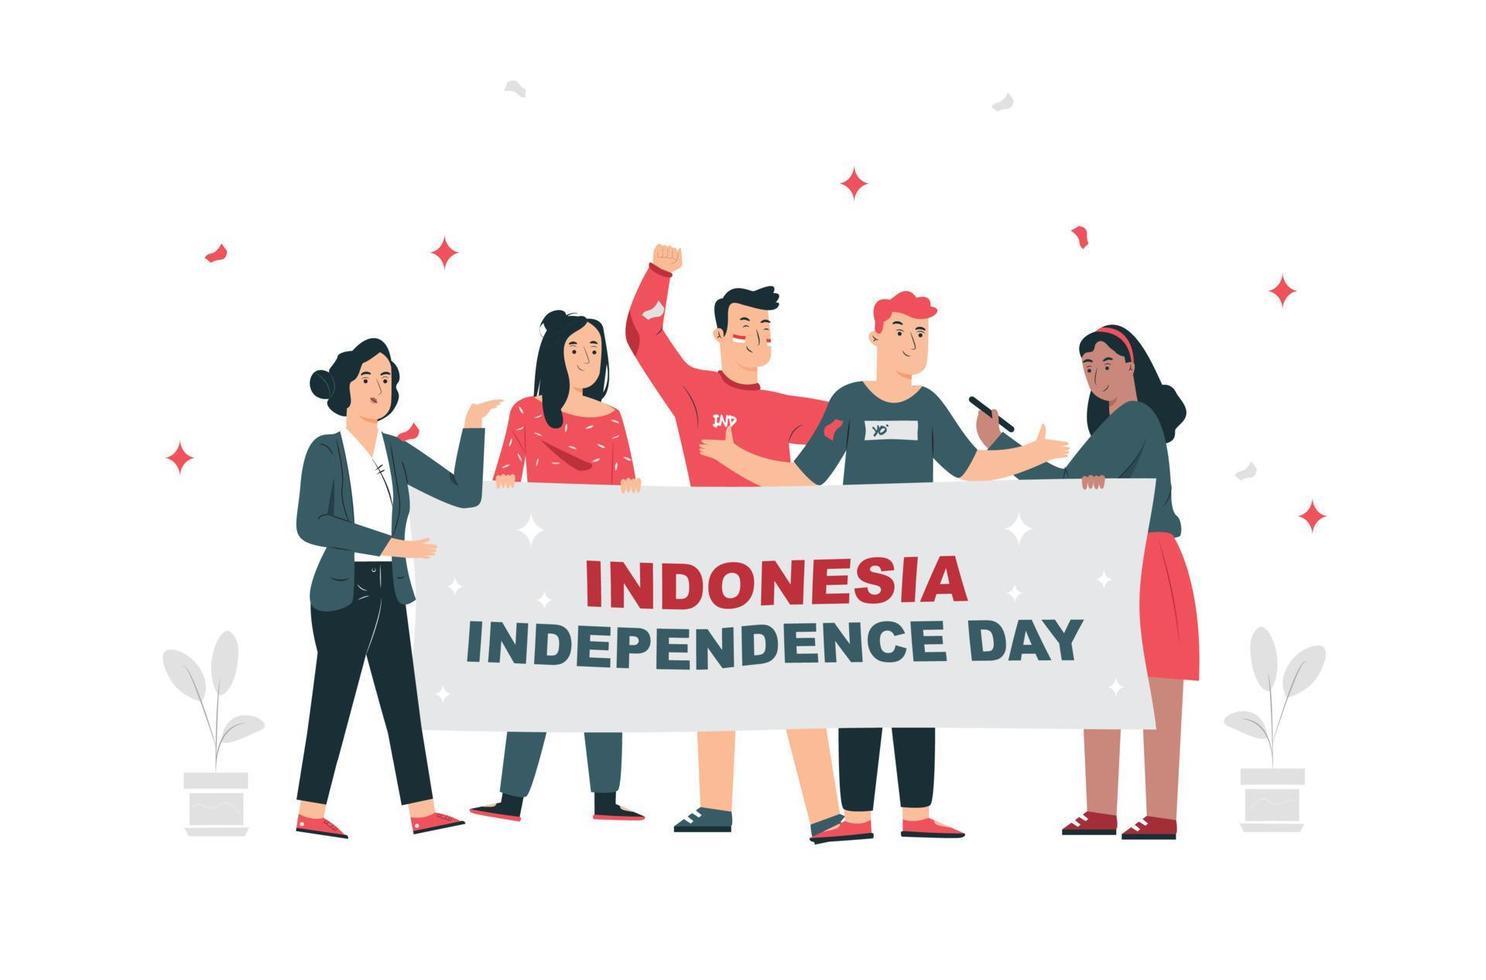 17. August. Geist des indonesischen Unabhängigkeitstages. 2 junge Menschen feiern den Unabhängigkeitstag, indem sie Fahnen tragen, ein Symbol für den Geist der Unabhängigkeit. Verwendung für Banner und Hintergründe vektor